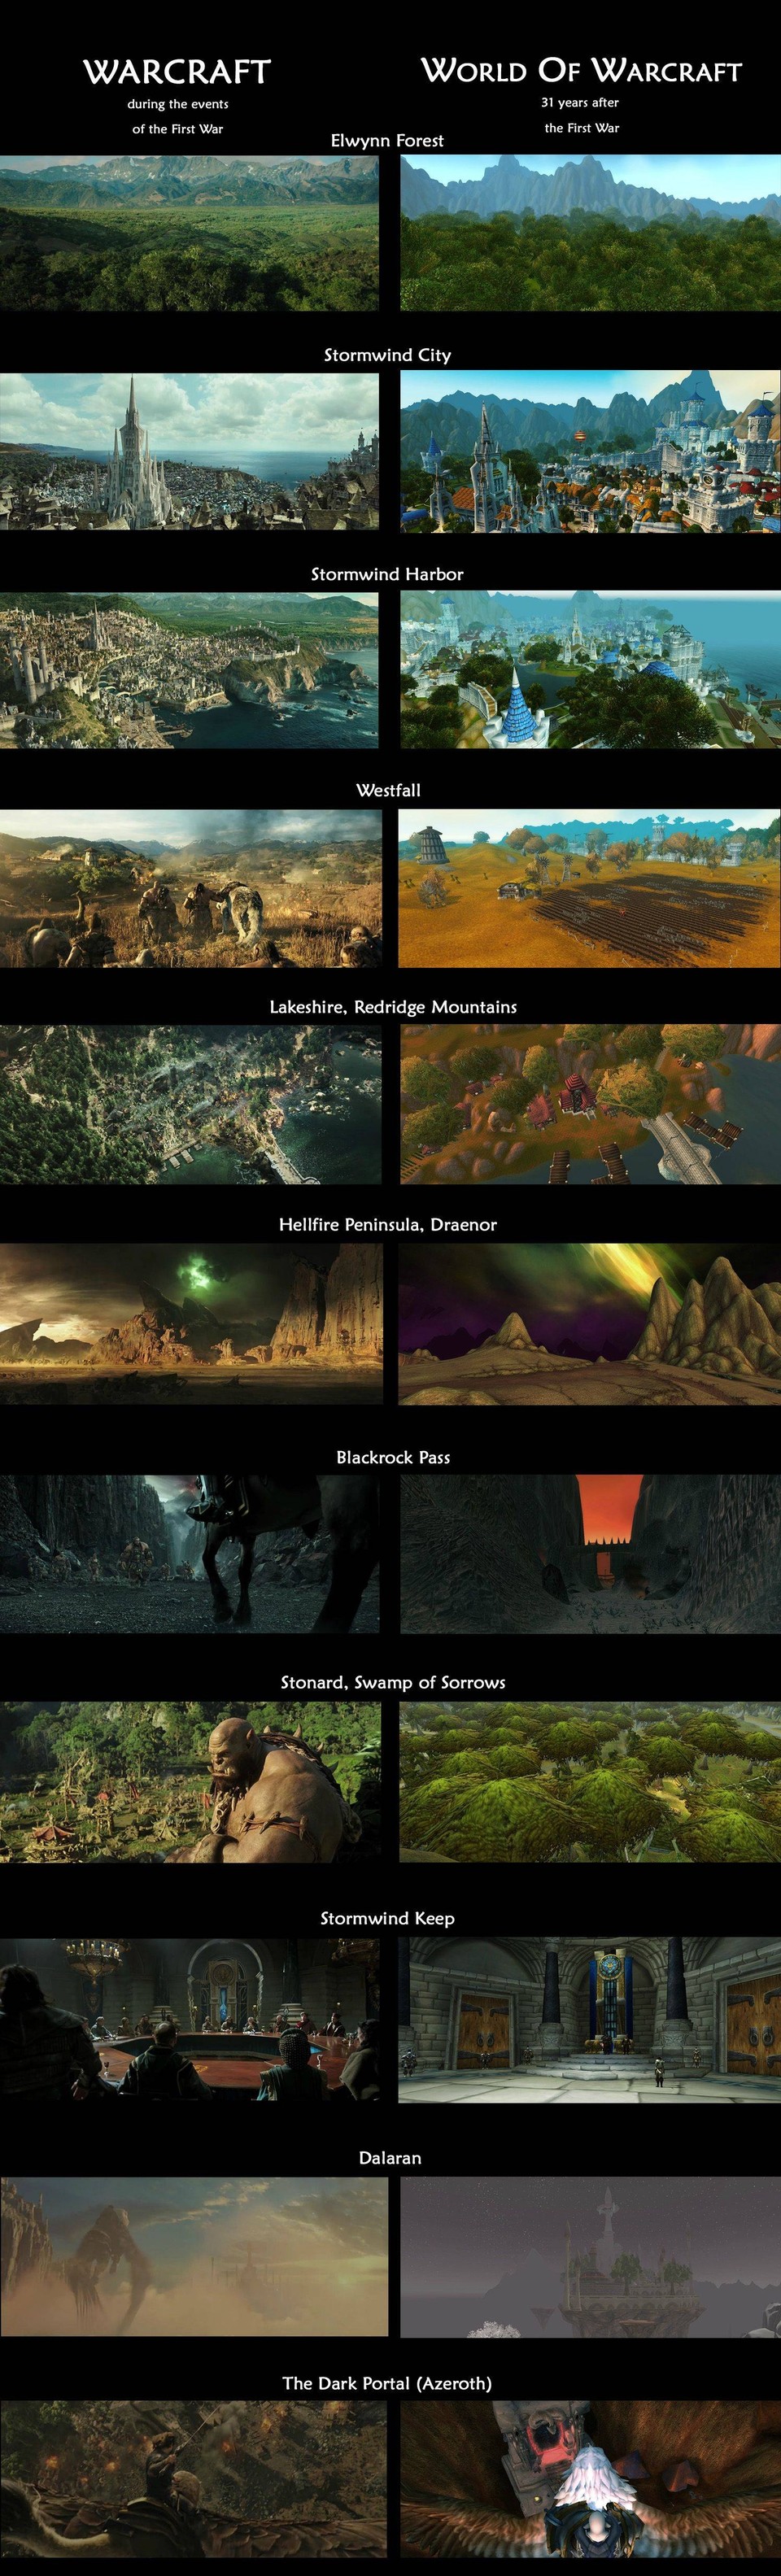 Warcraft - Vergleich zwischen Spiel und Film. Quelle: http://imgur.com/UfU0ynW